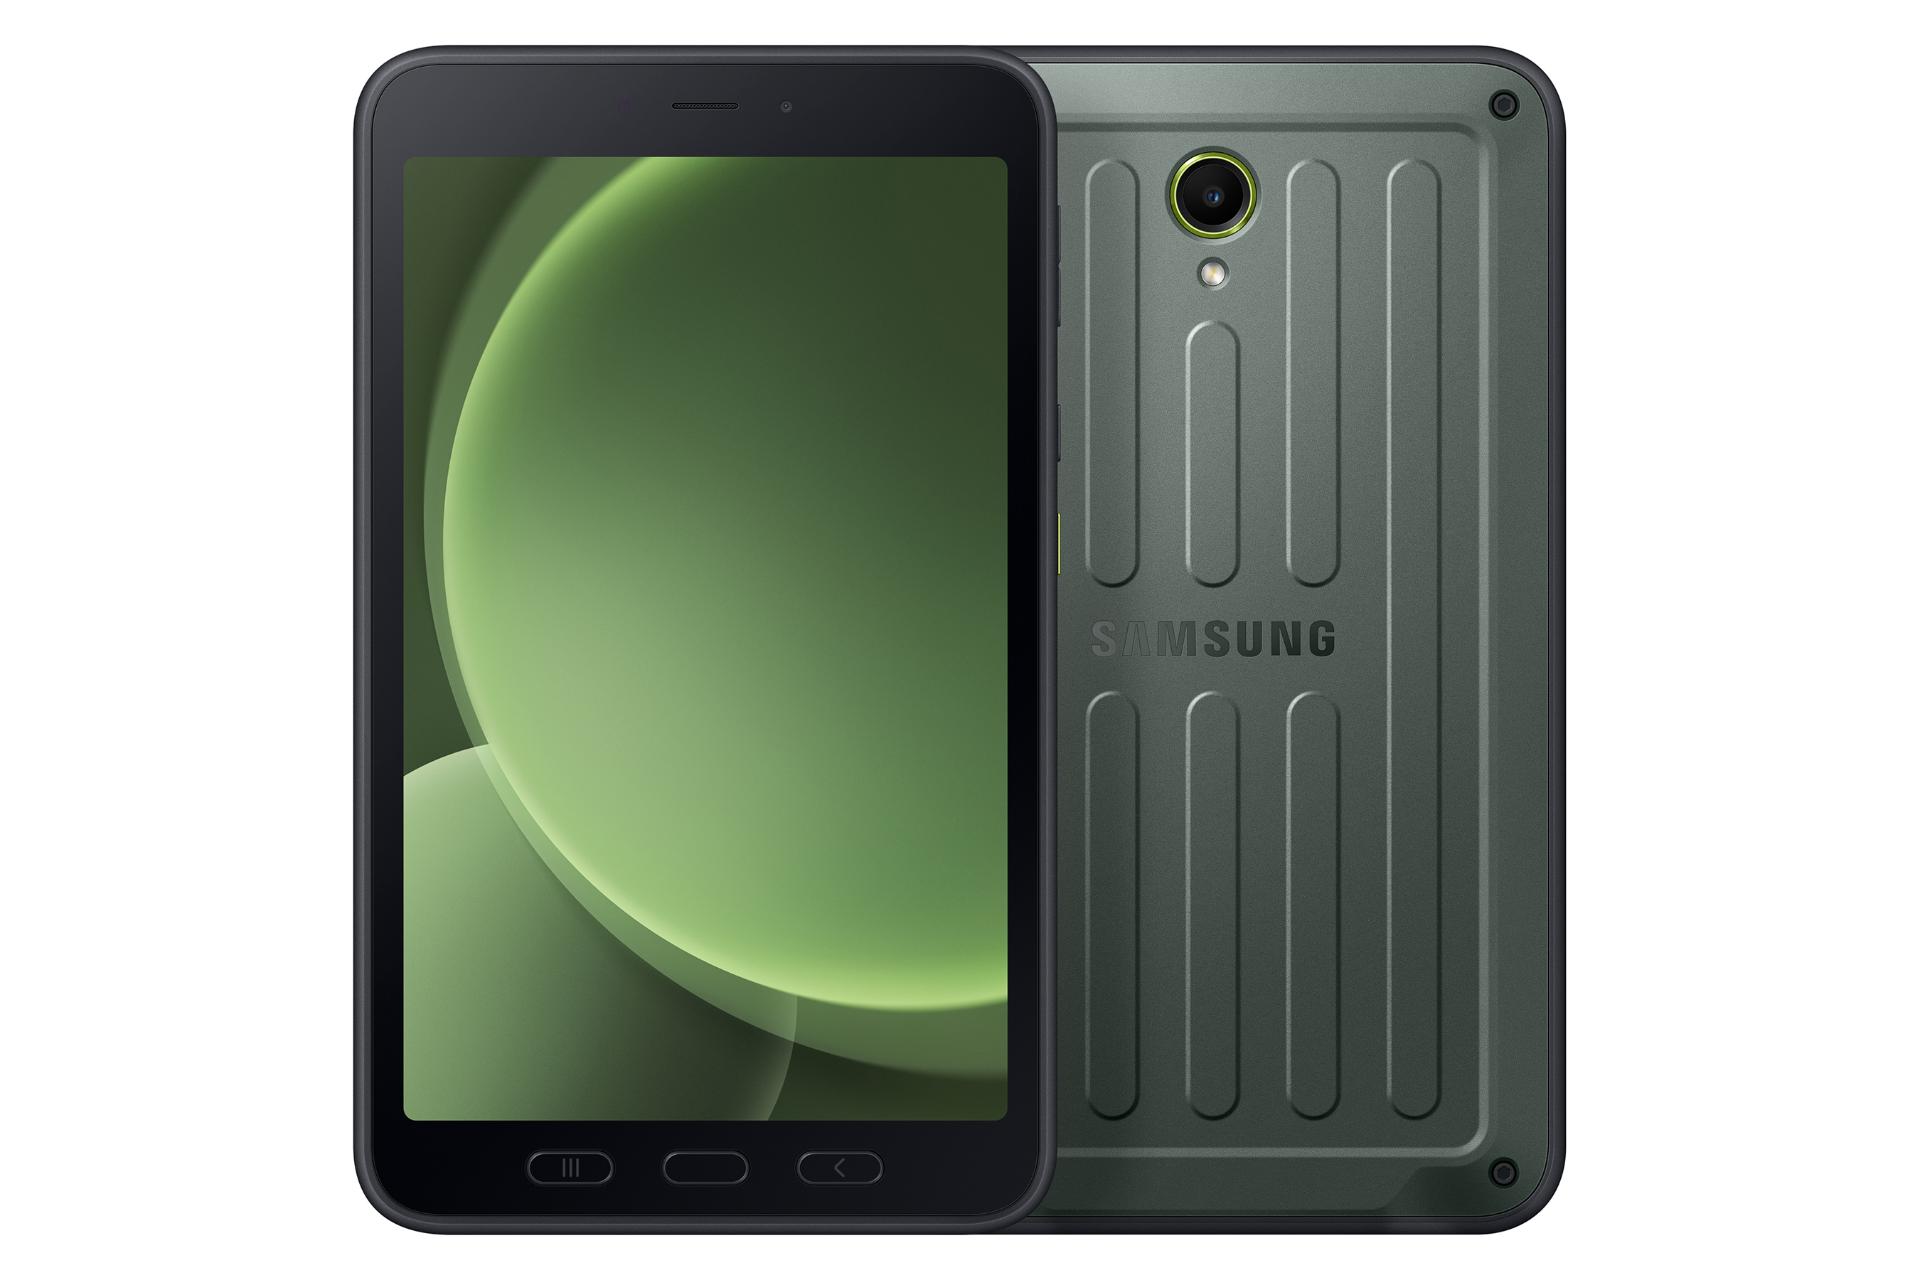 نمای کلی تبلت گلکسی تب اکتیو 5 سامسونگ / Samsung Galaxy Tab Active5 با نمایشگر روشن و نمایش پنل پشت، دوربین و لوگو رنگ سبز